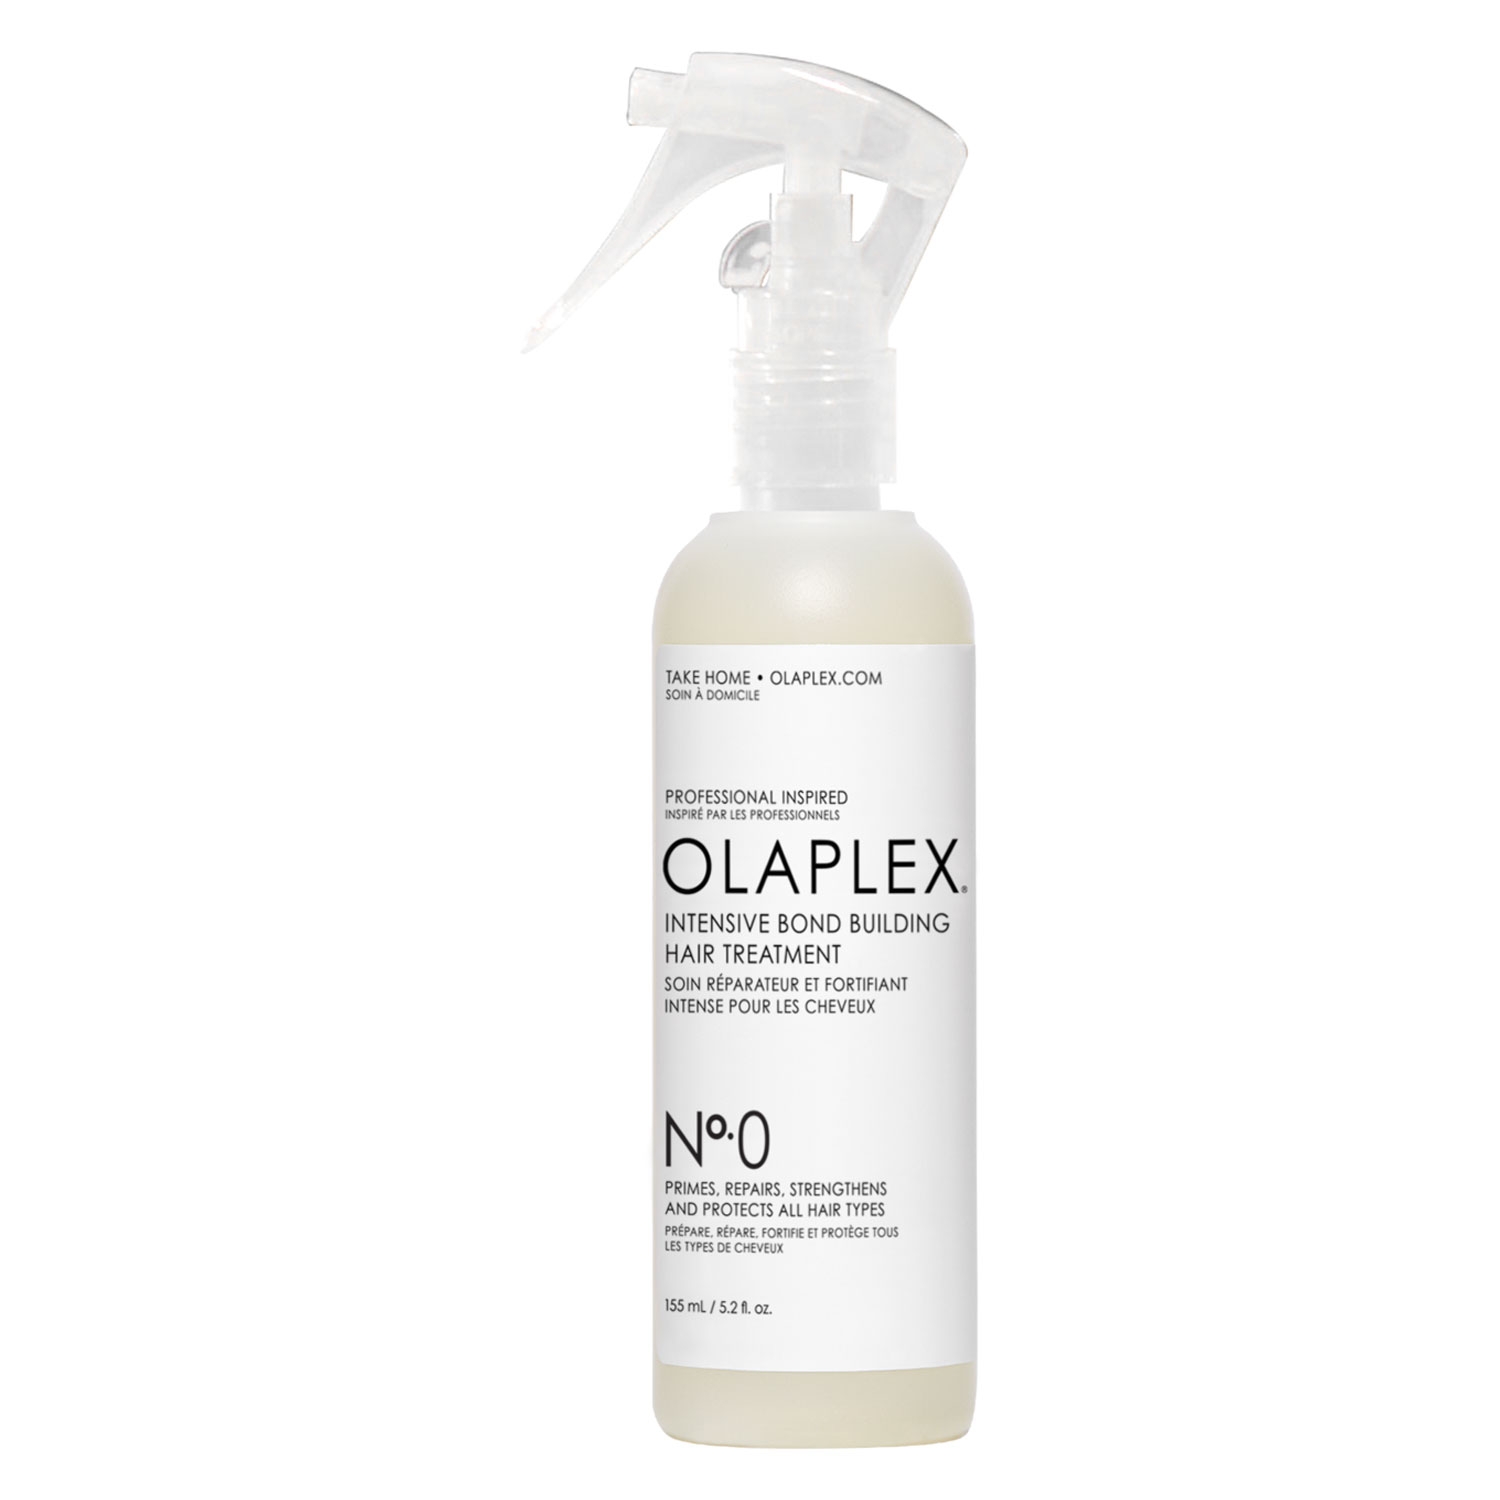 Produktbild von Olaplex - Intensive Bond Building Hair Treatment No. 0